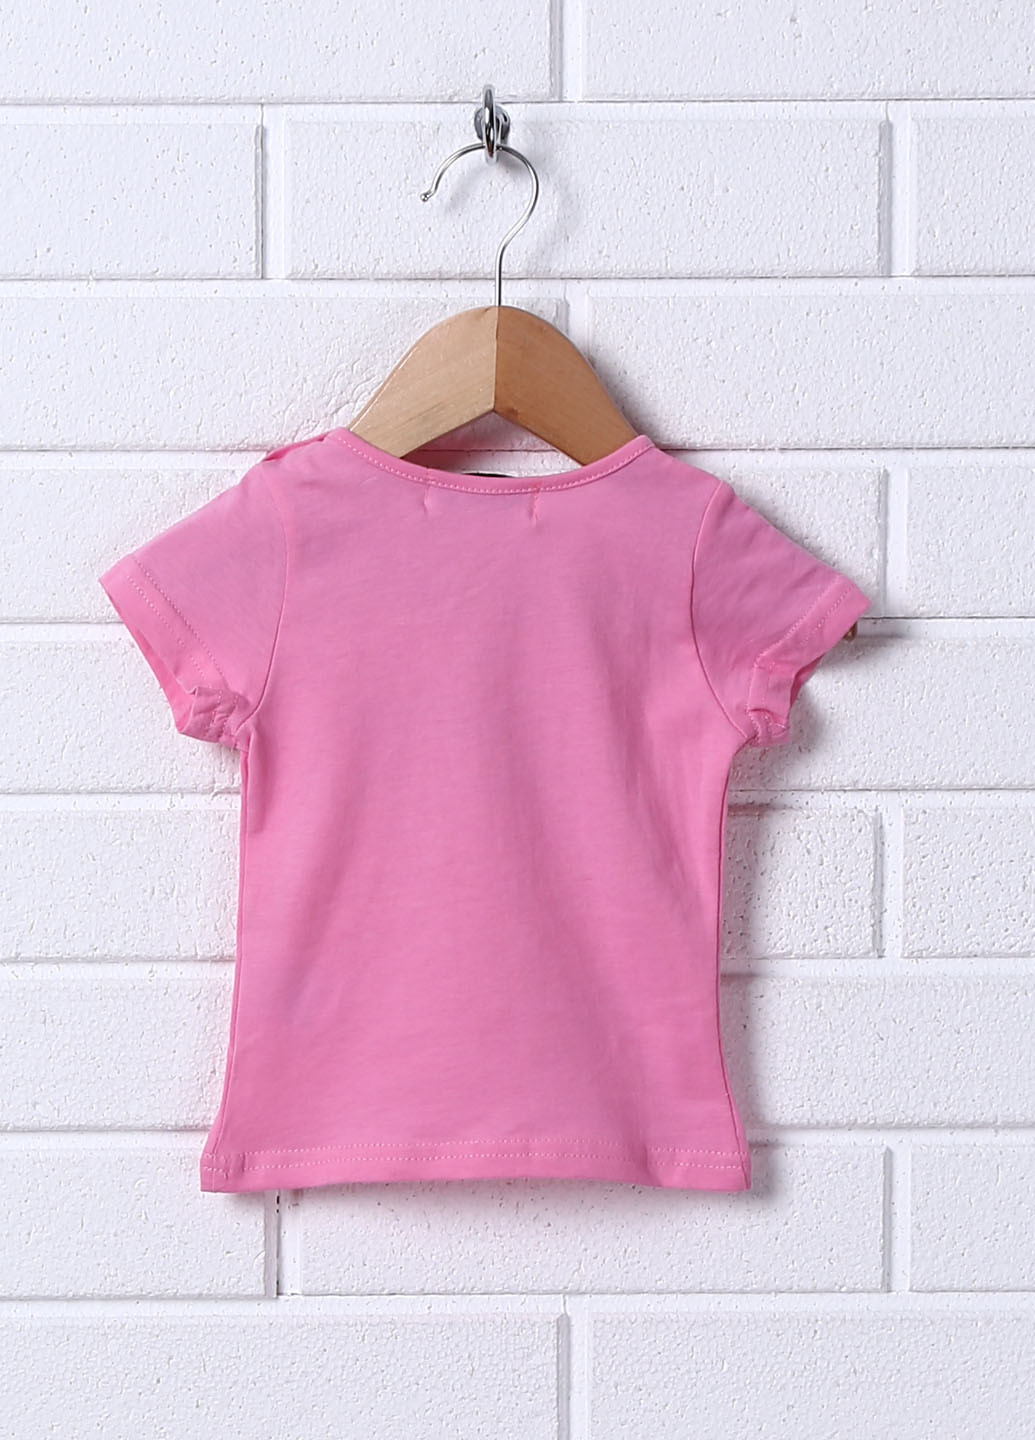 Рожева літня футболка Miss Image